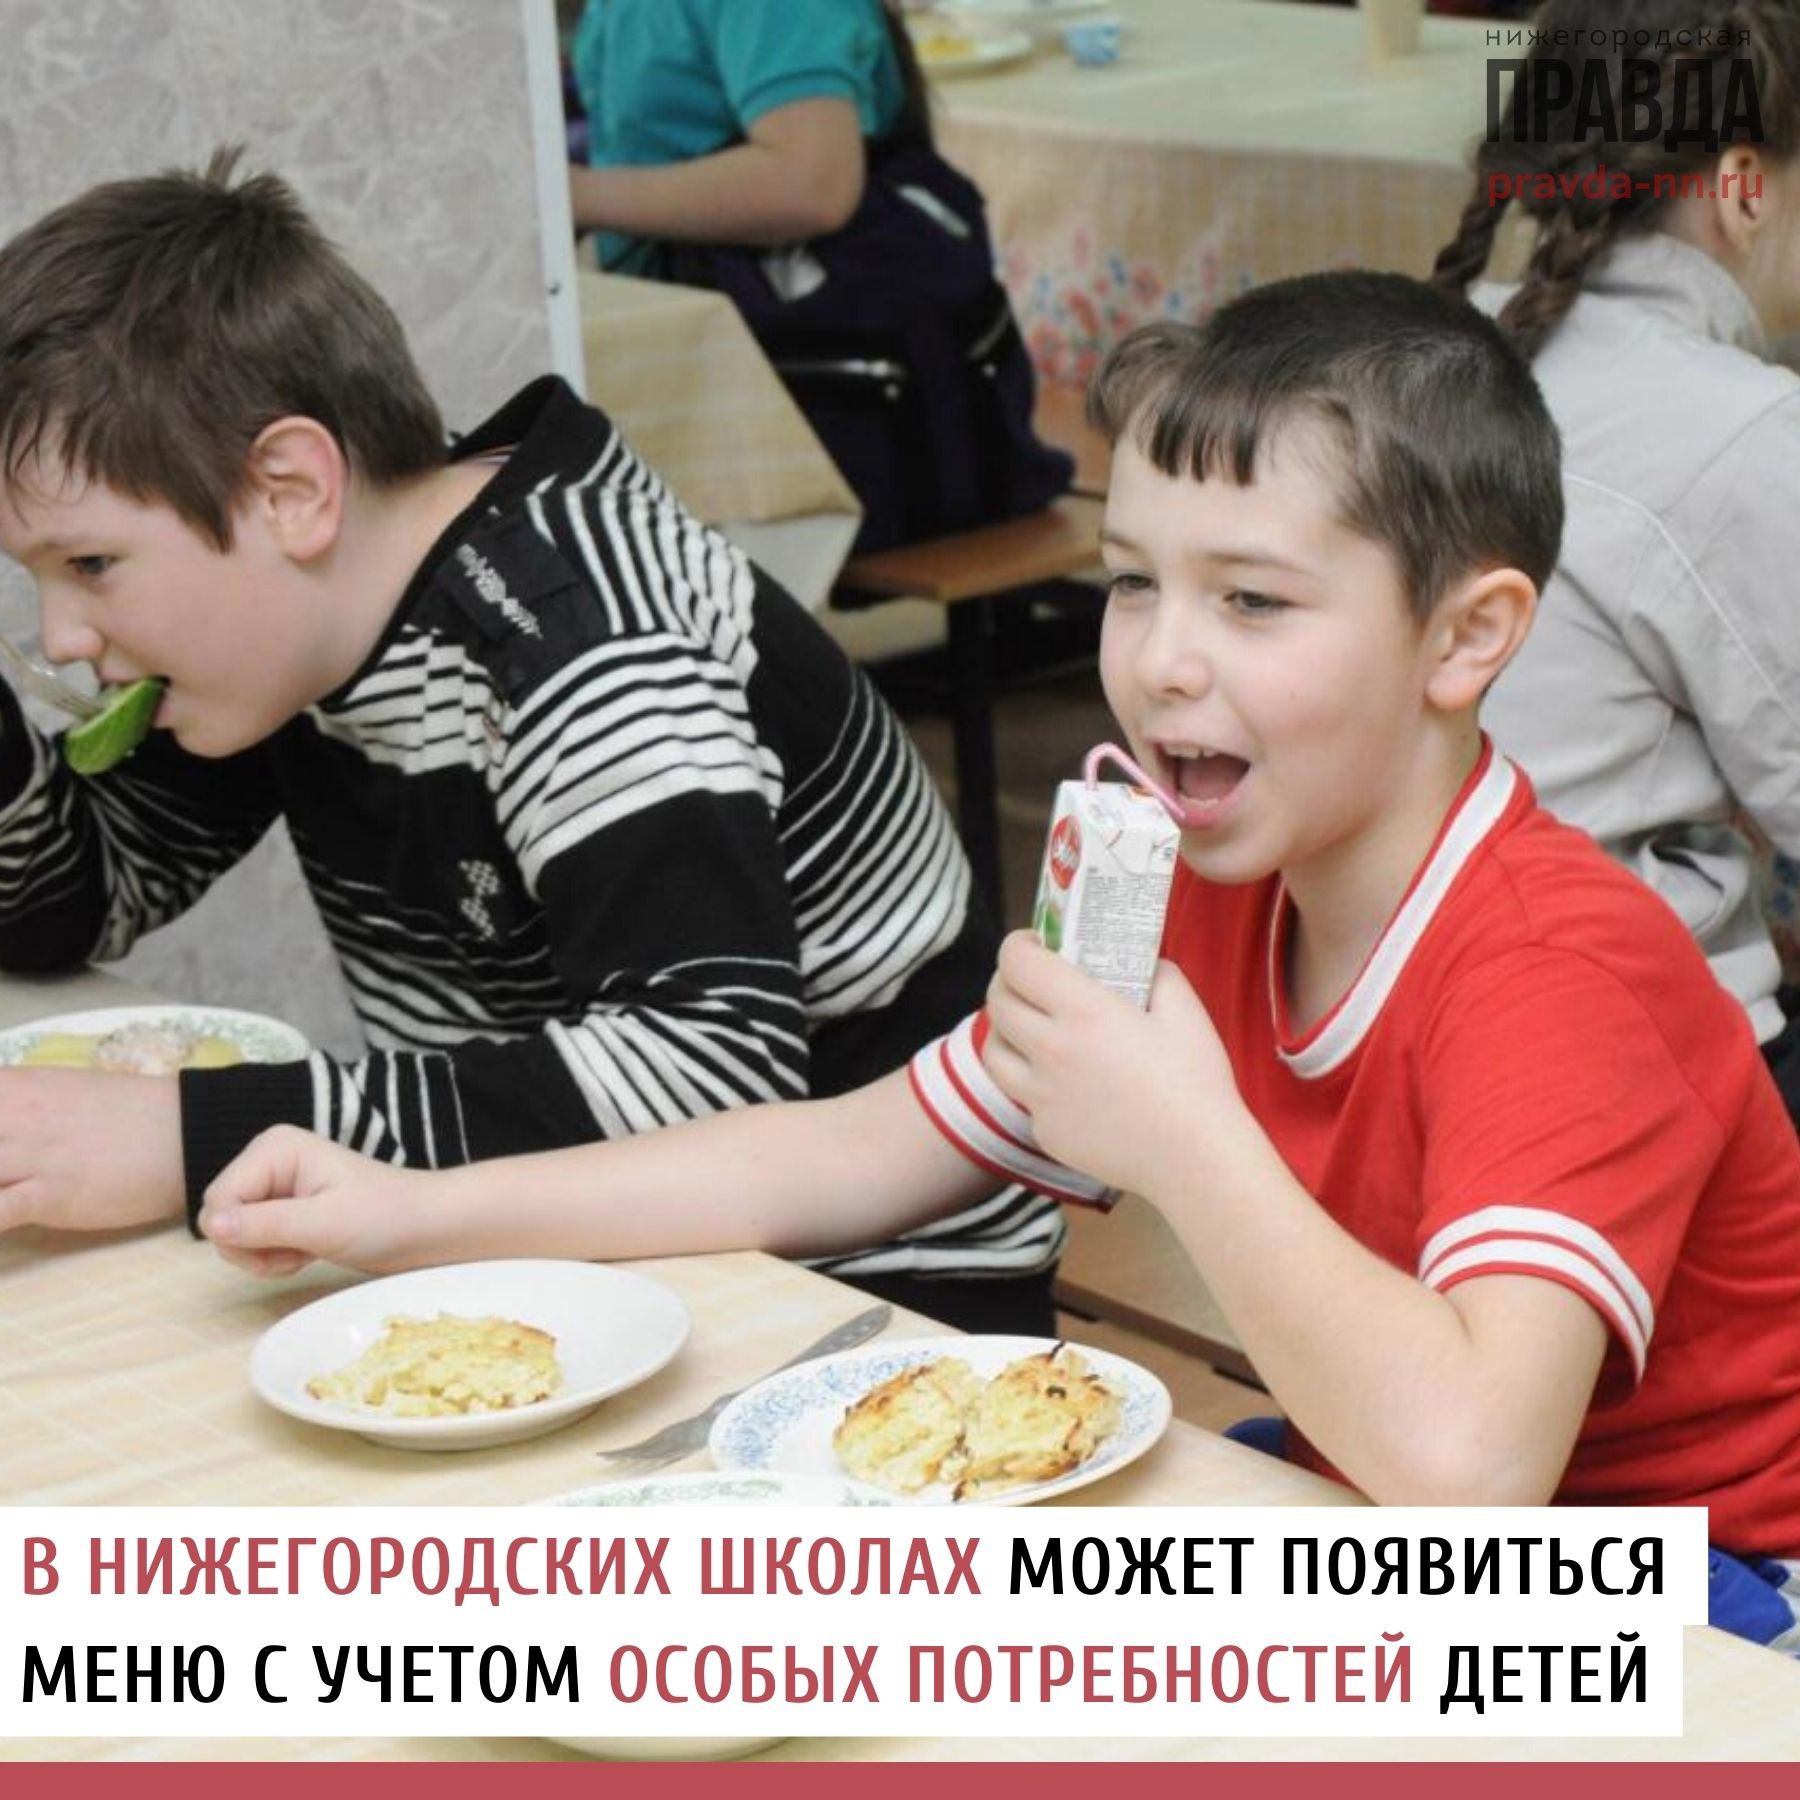 С нового учебного года нижегородские школьники могут получать спецпитание.